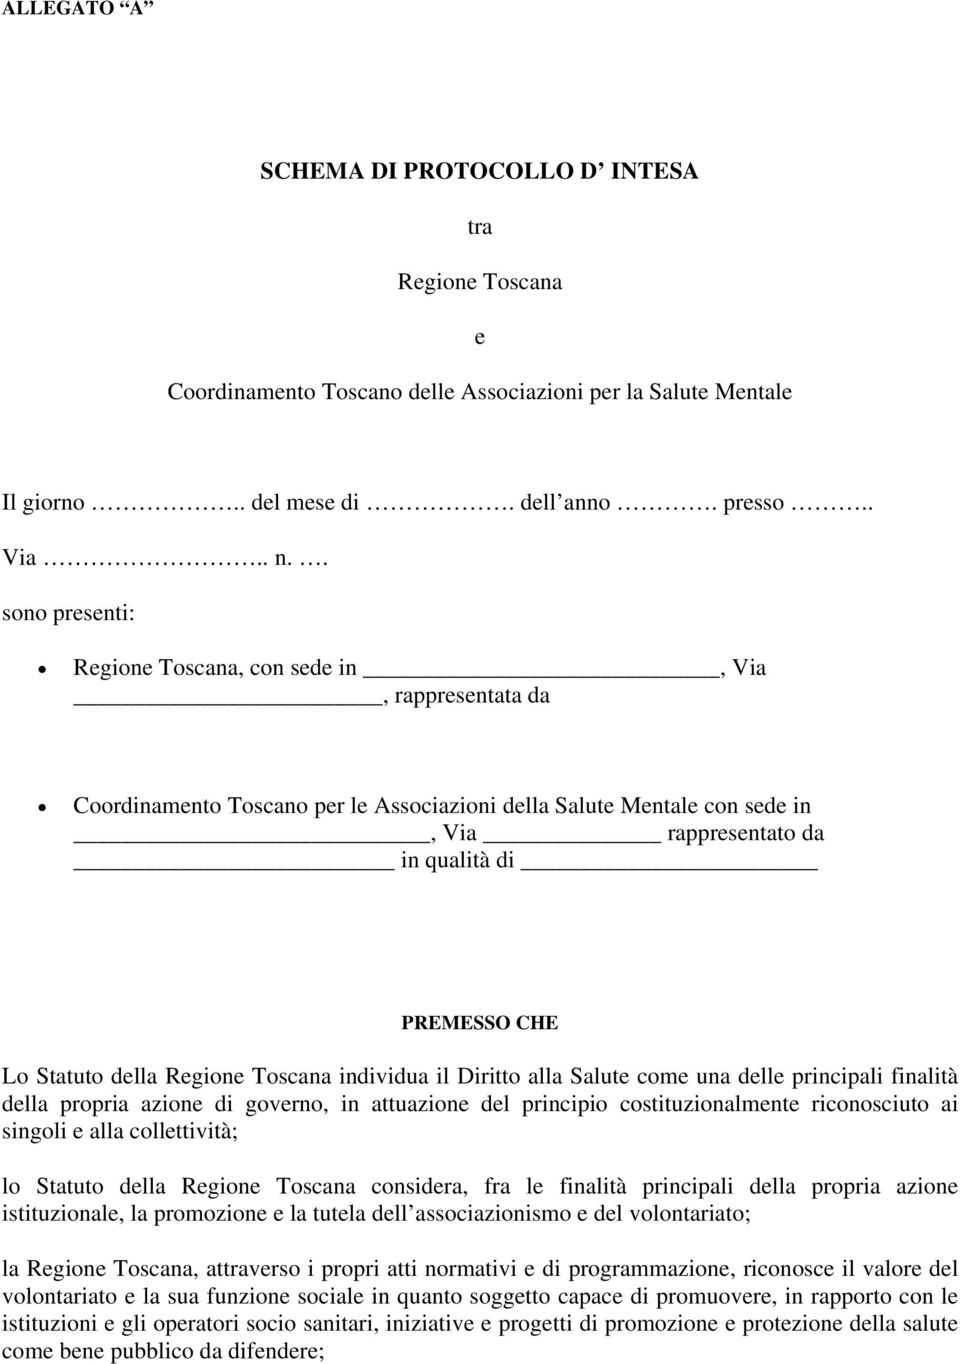 Statuto della Regione Toscana individua il Diritto alla Salute come una delle principali finalità della propria azione di governo, in attuazione del principio costituzionalmente riconosciuto ai